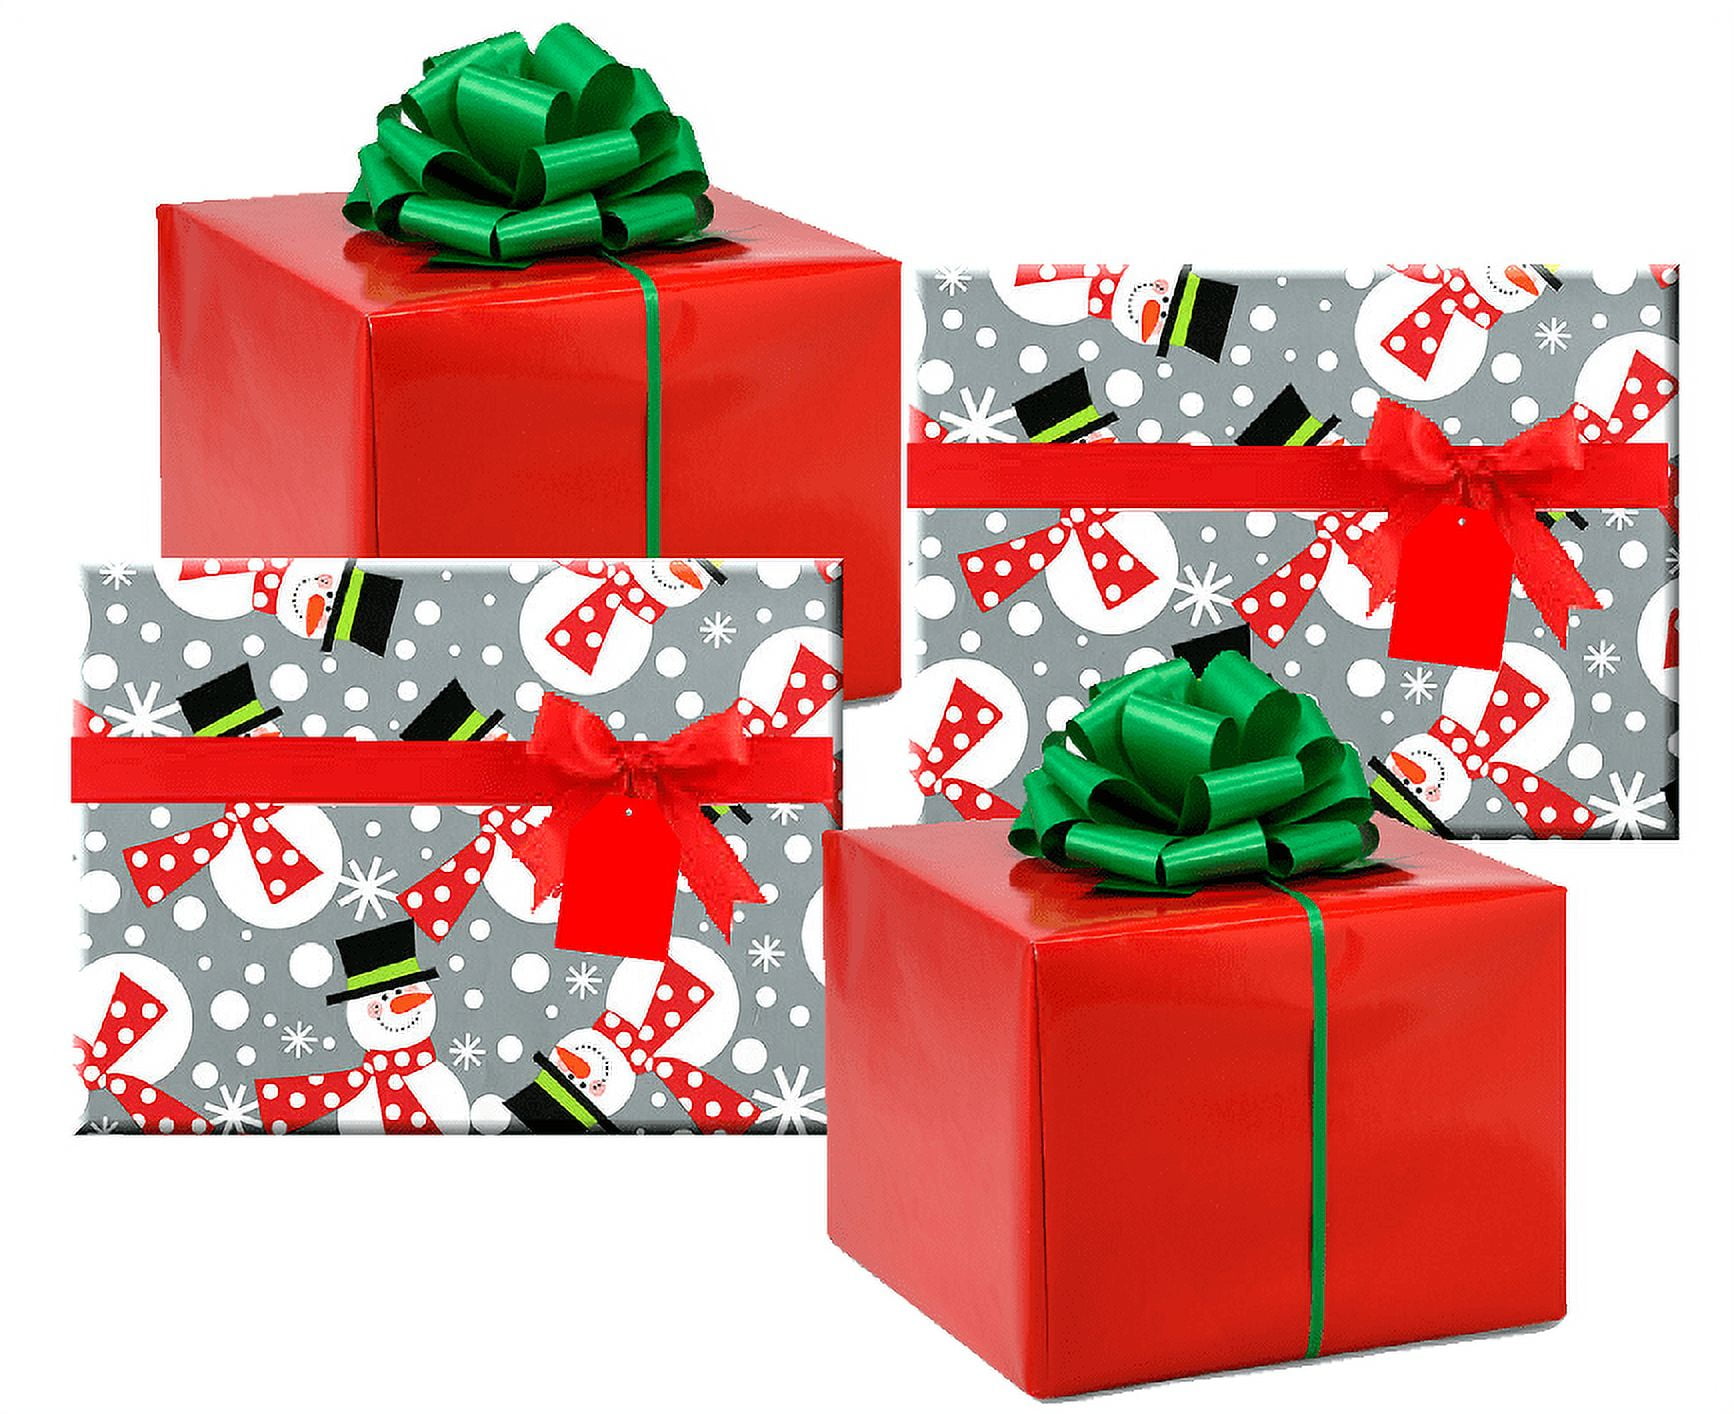 Christmas Gift Wrapping Neighbor Gifts — Apricot Polkadot